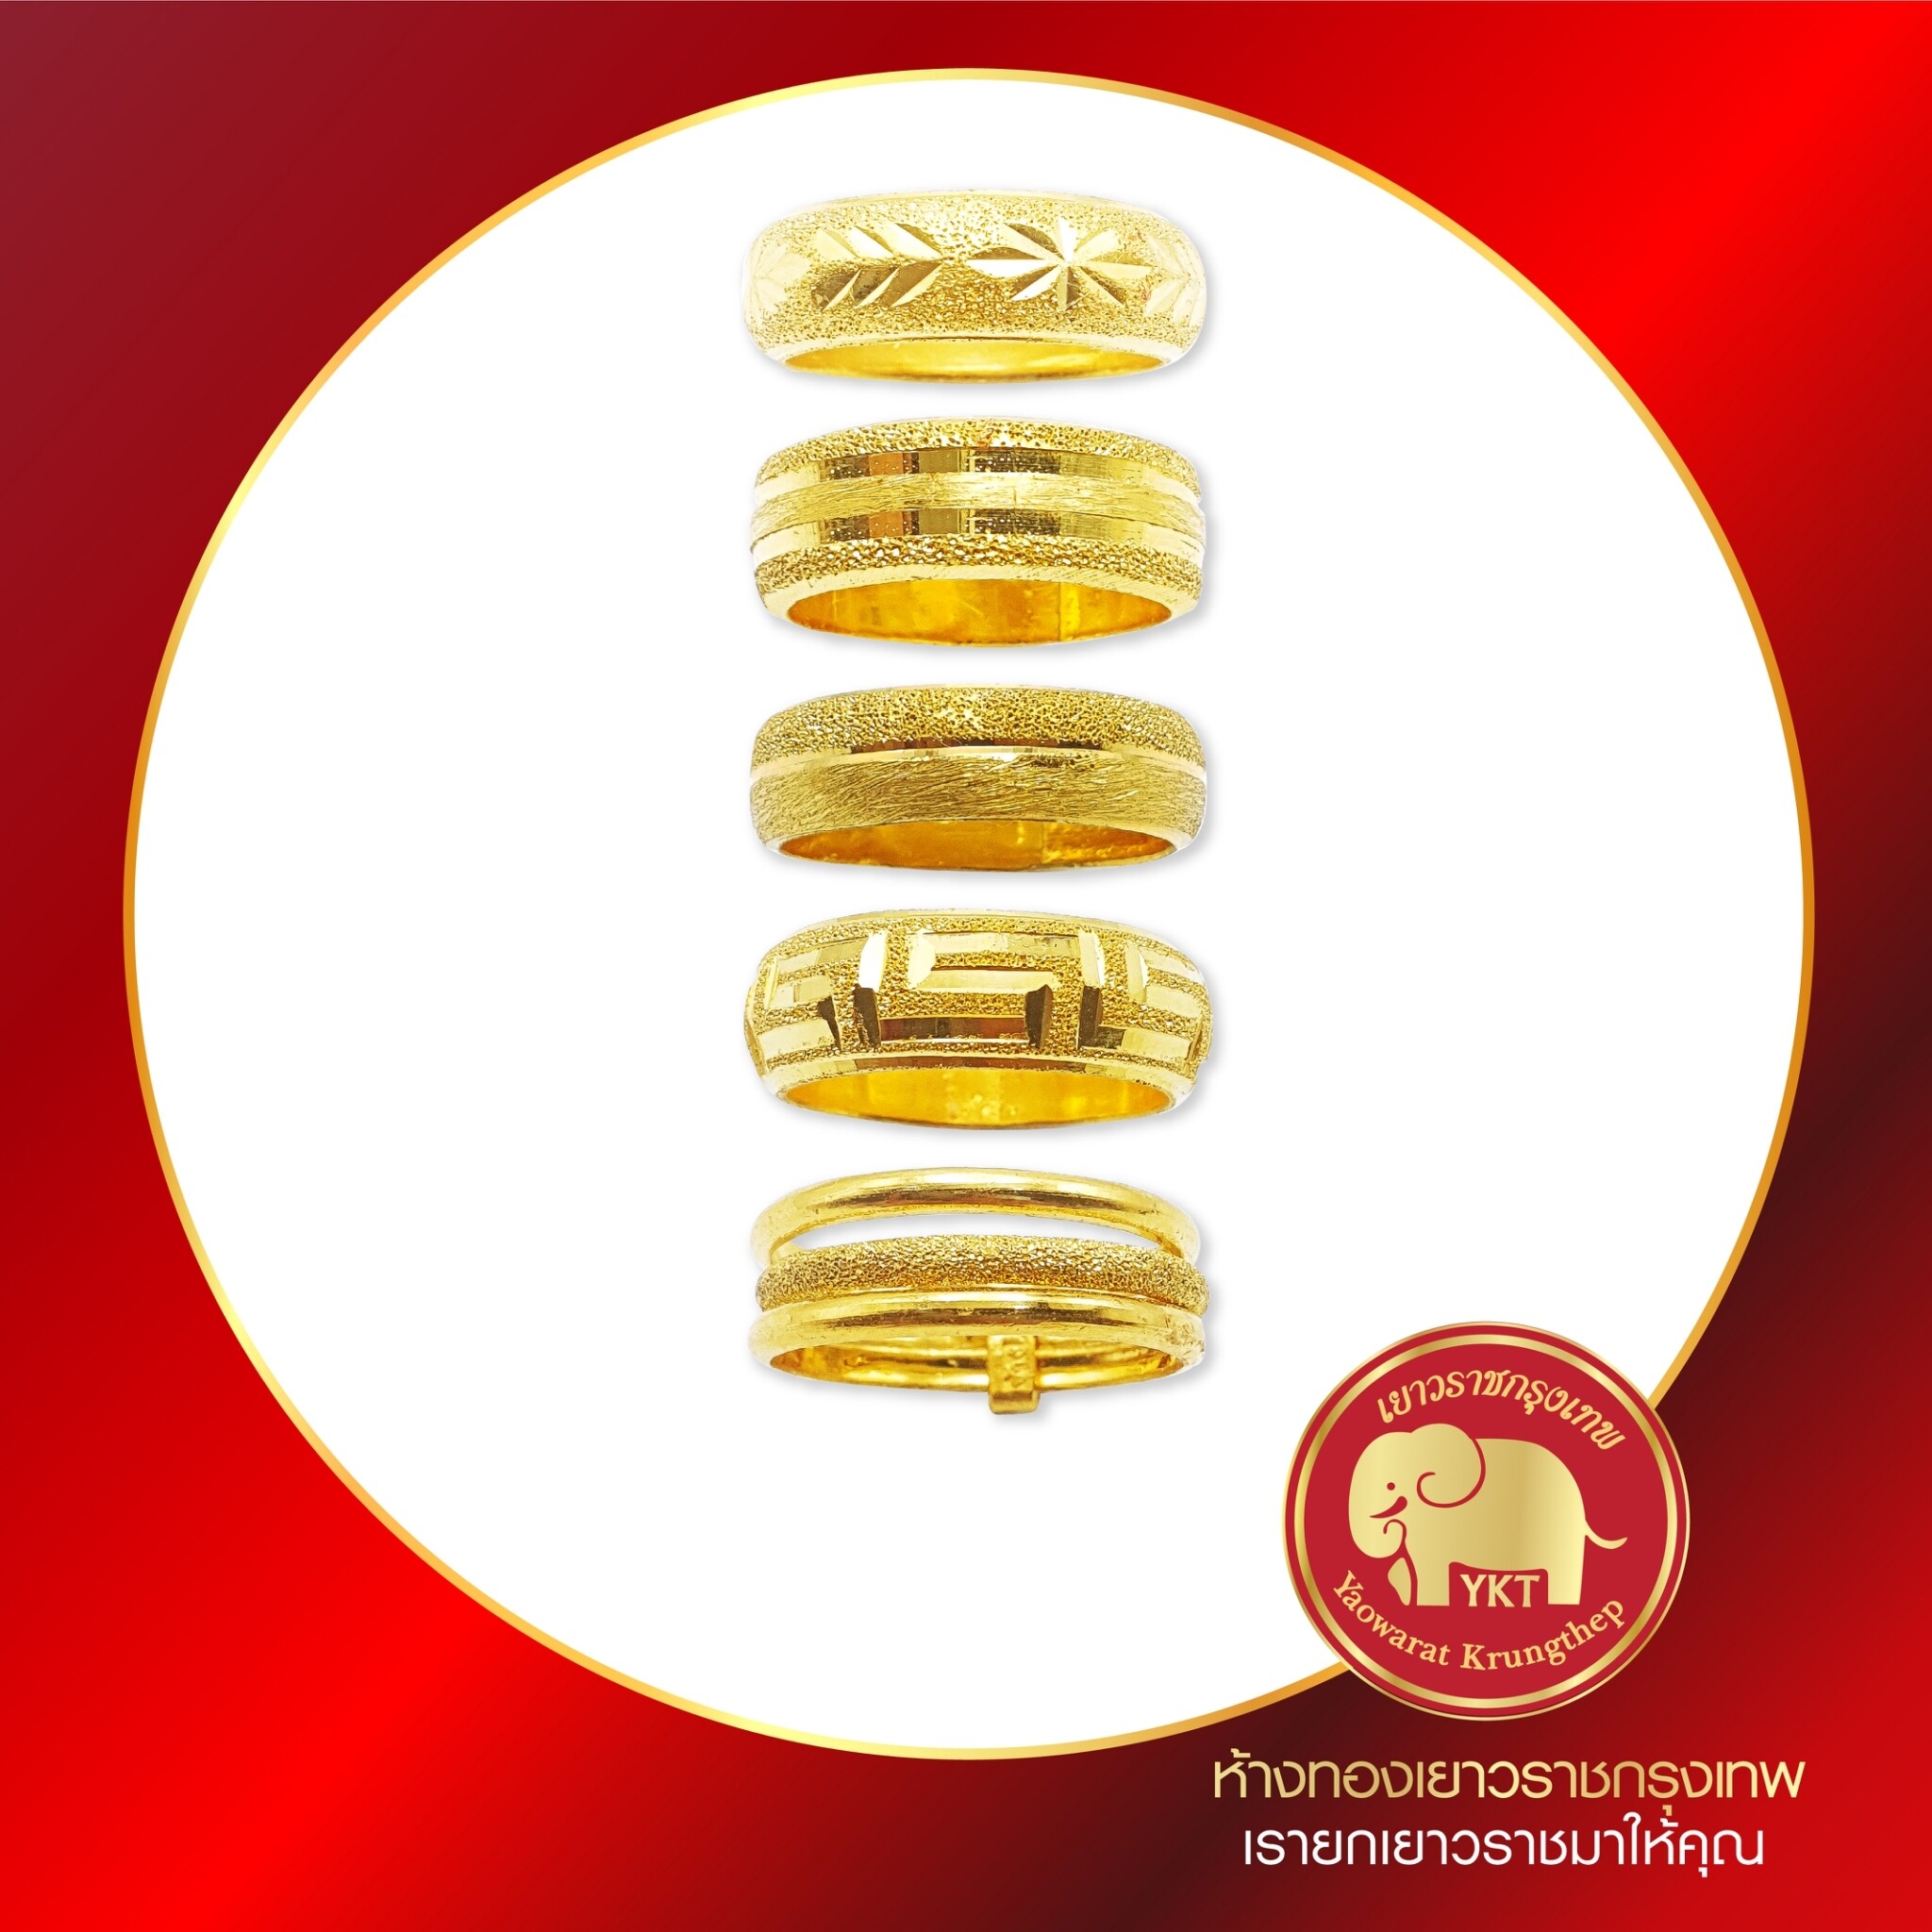 ห้างทองเยาวราชกรุงเทพ แหวนทองคำ 96.5% คละลาย น้ำหนัก 1 สลึง